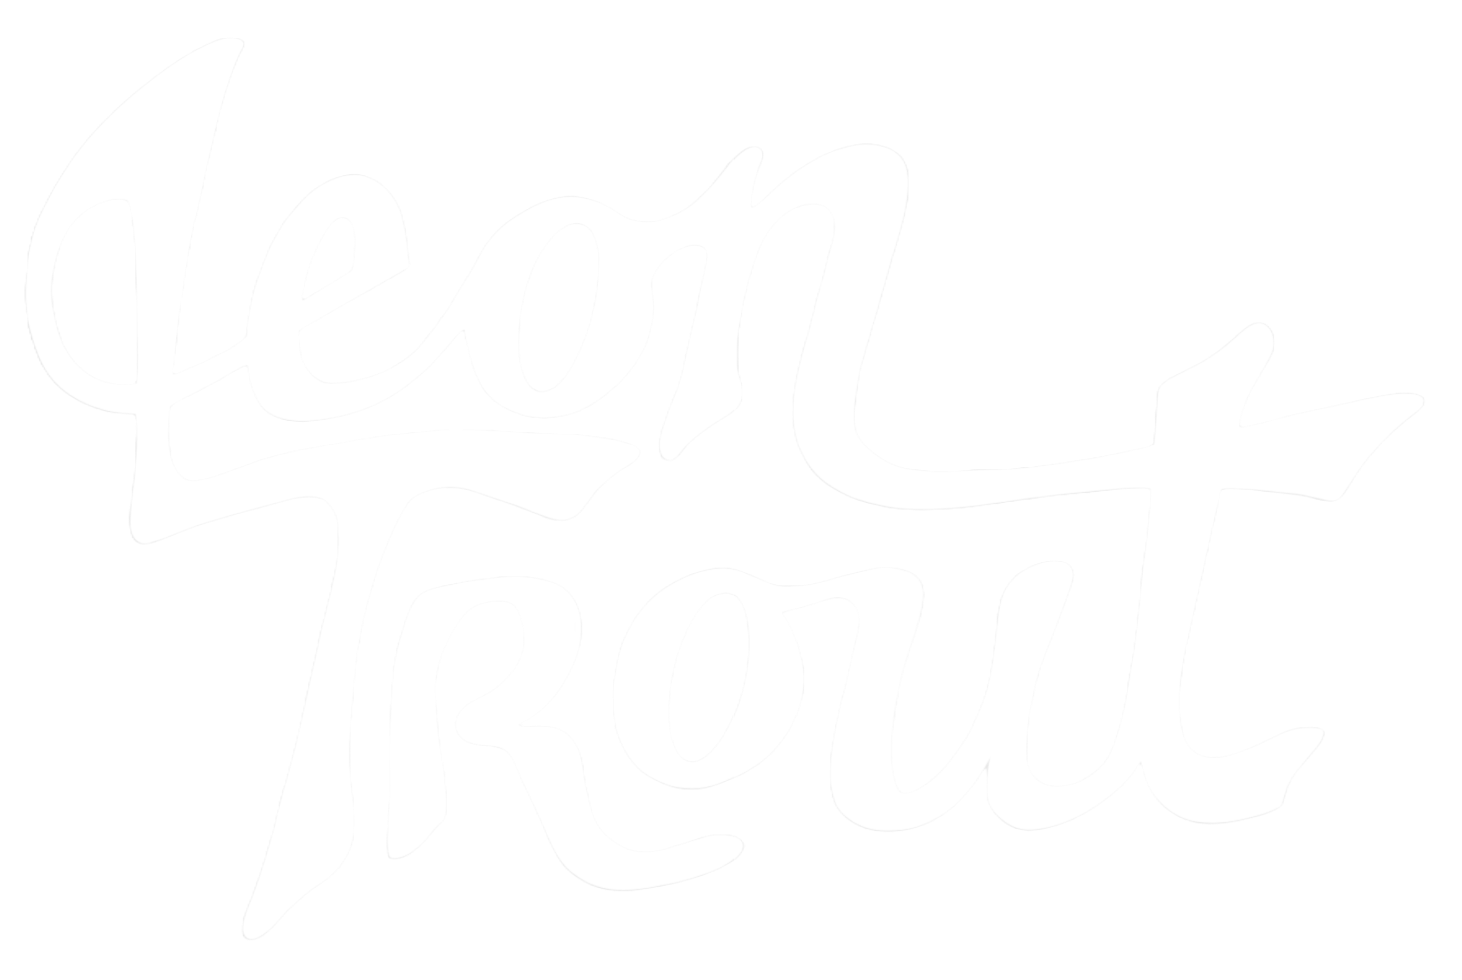 Leon Trout